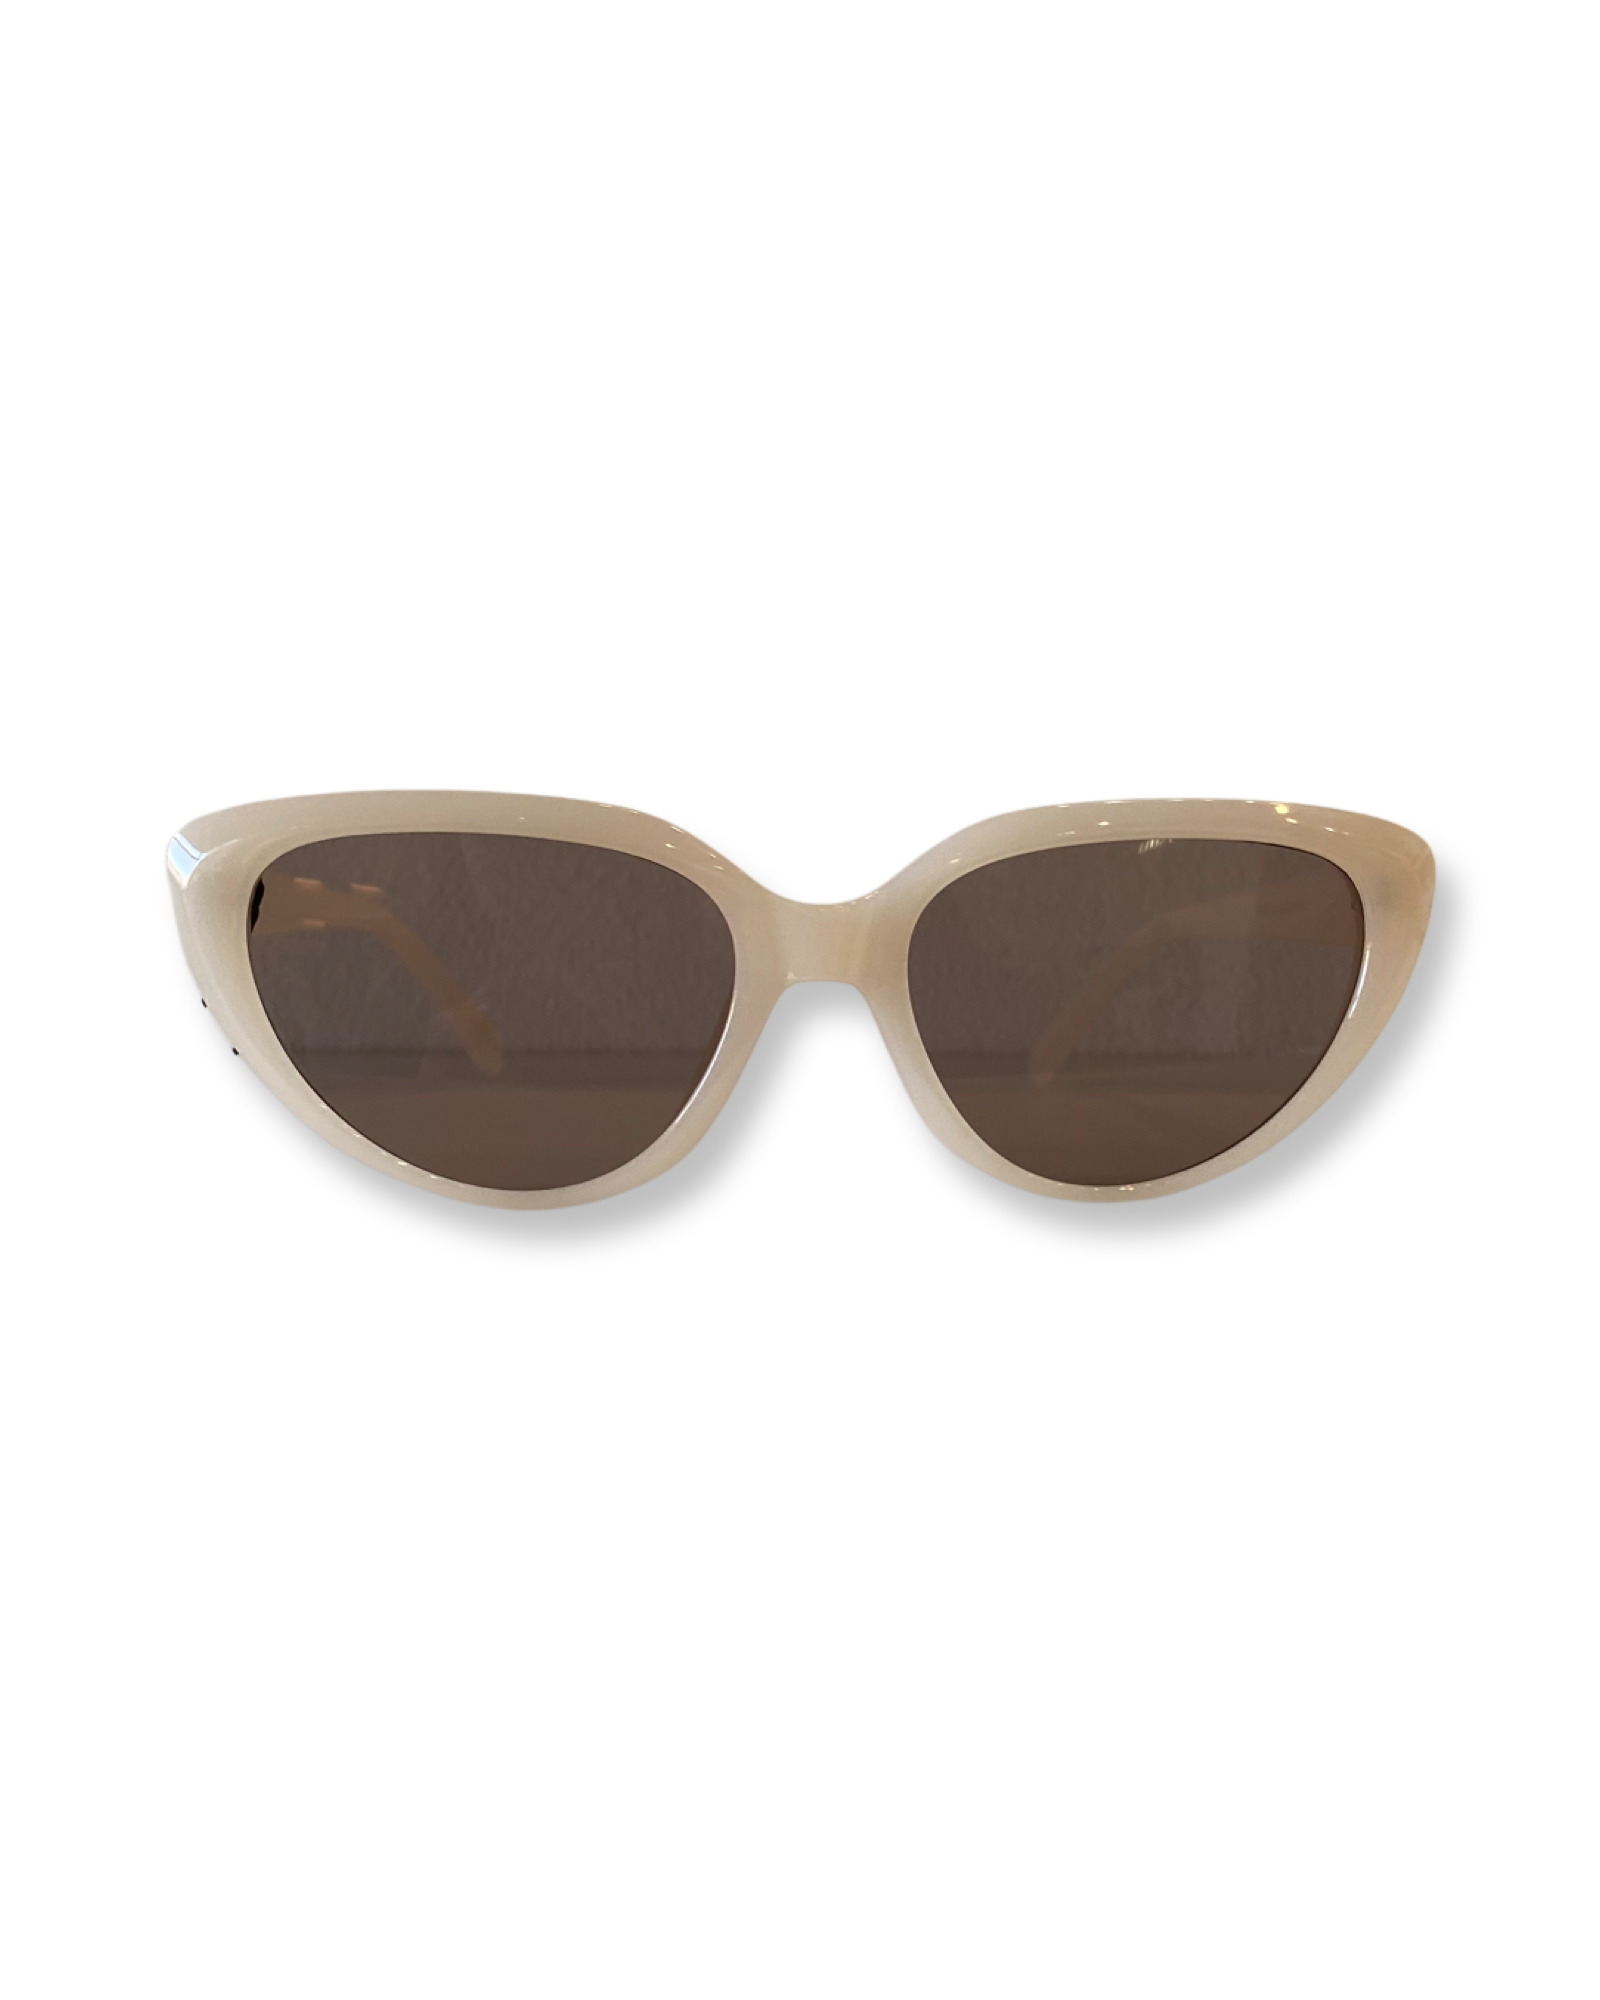 Cat eye sunglasses - Tan